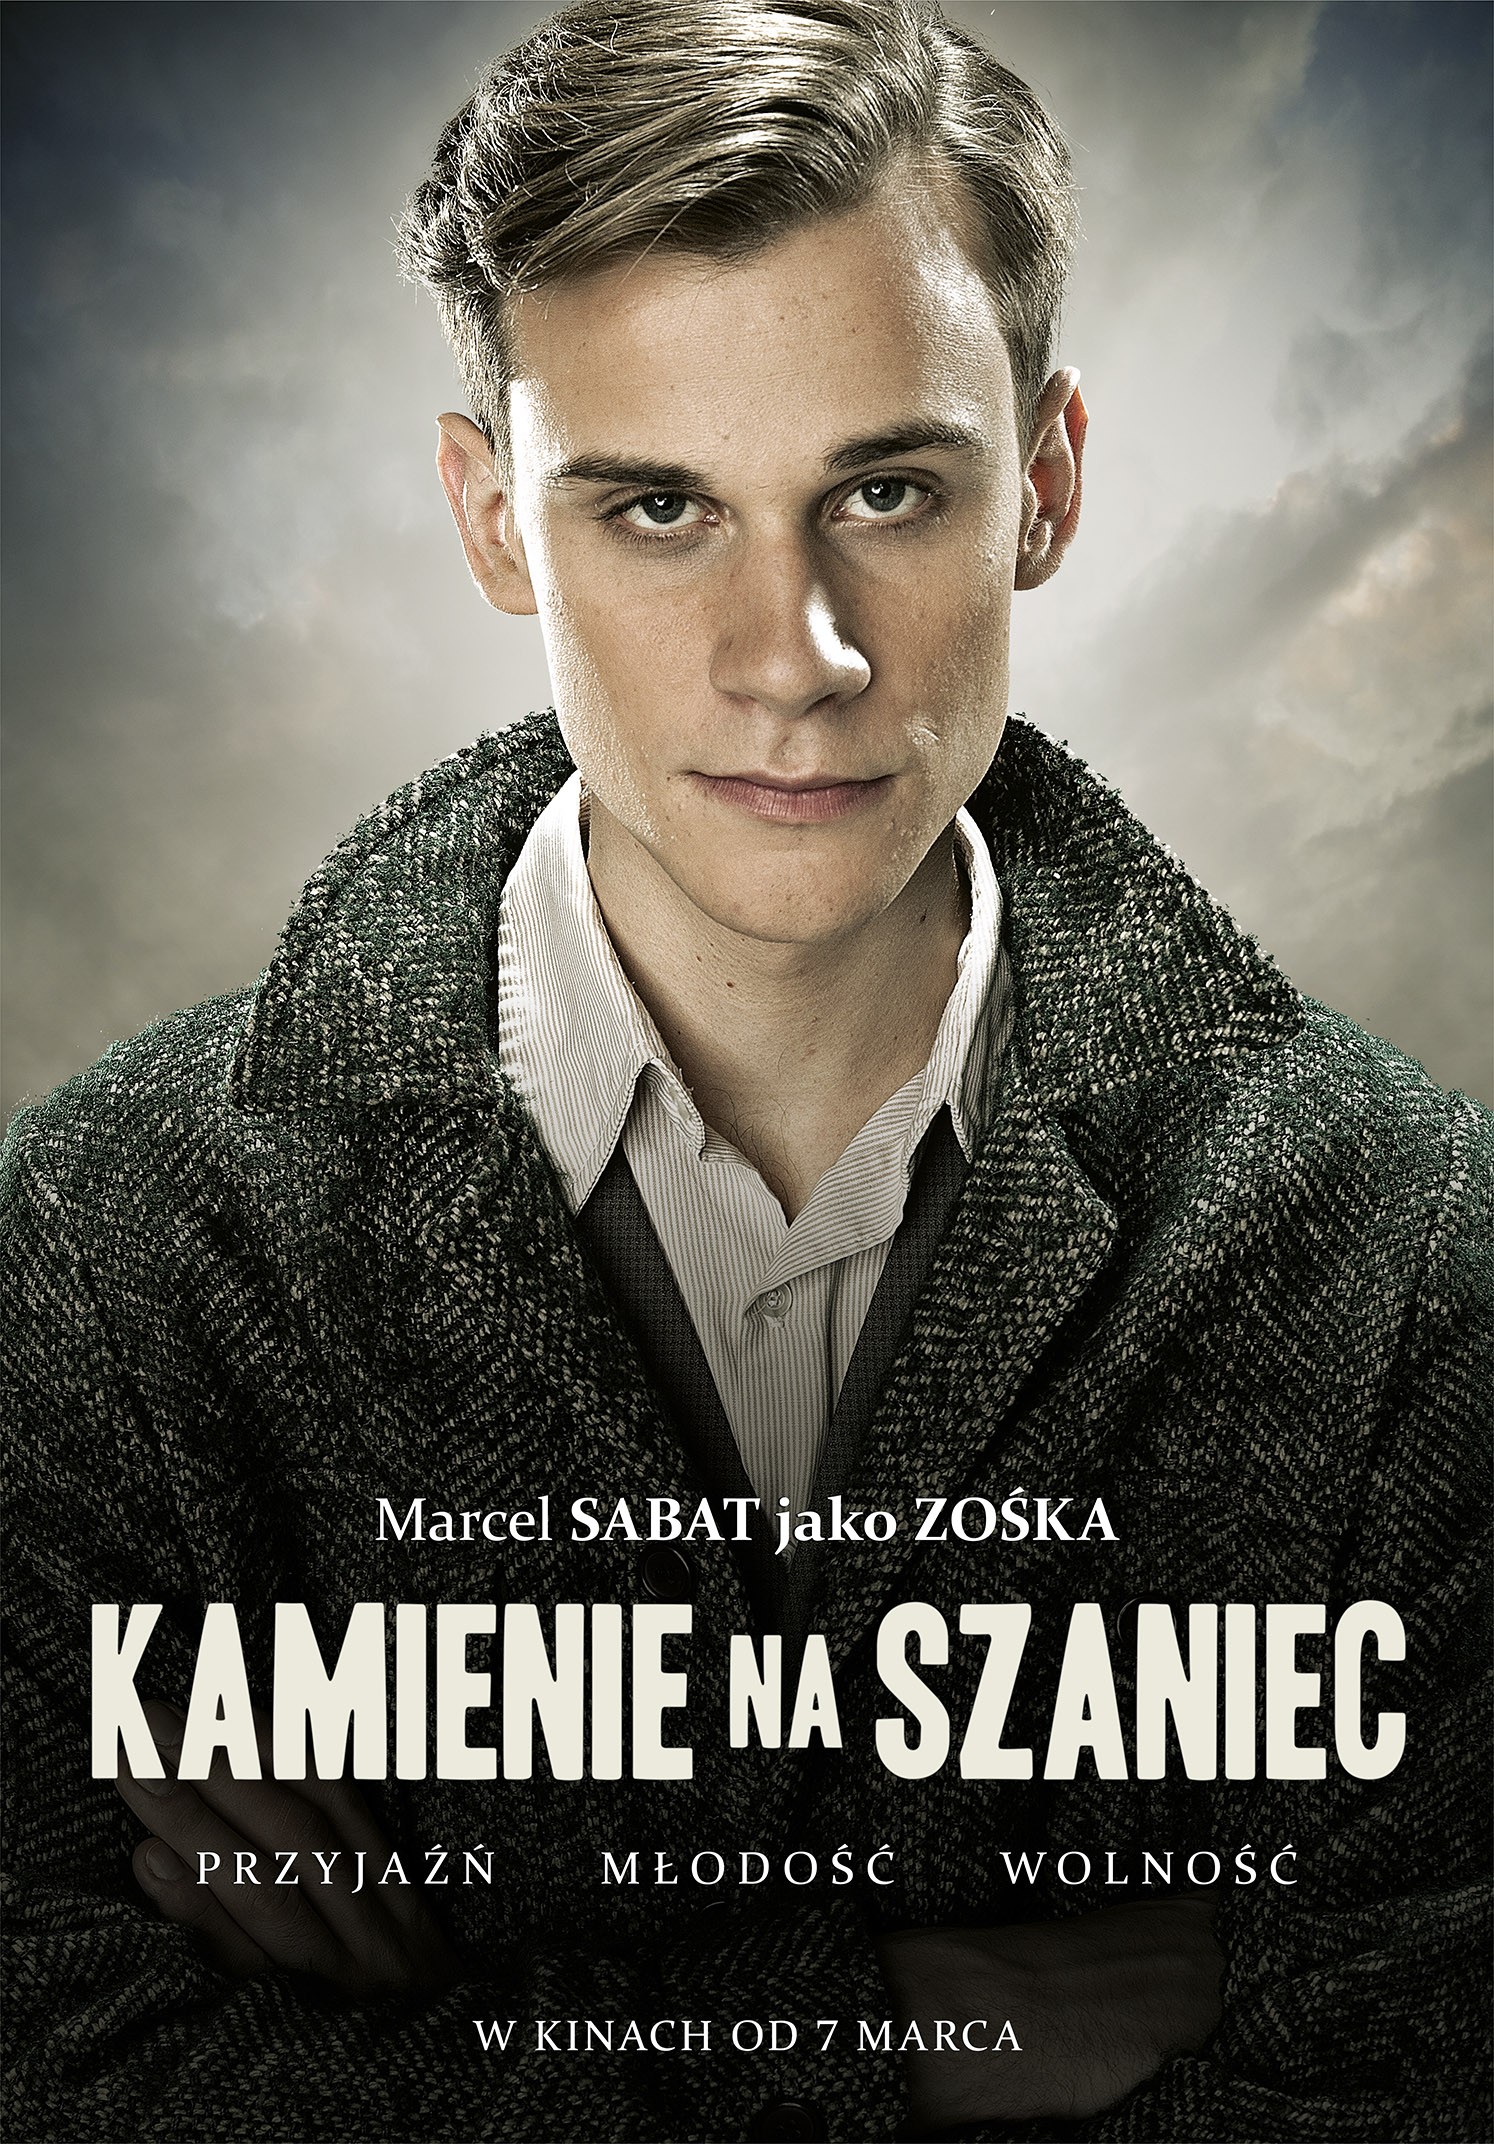 Mega Sized Movie Poster Image for Kamienie na szaniec (#2 of 8)